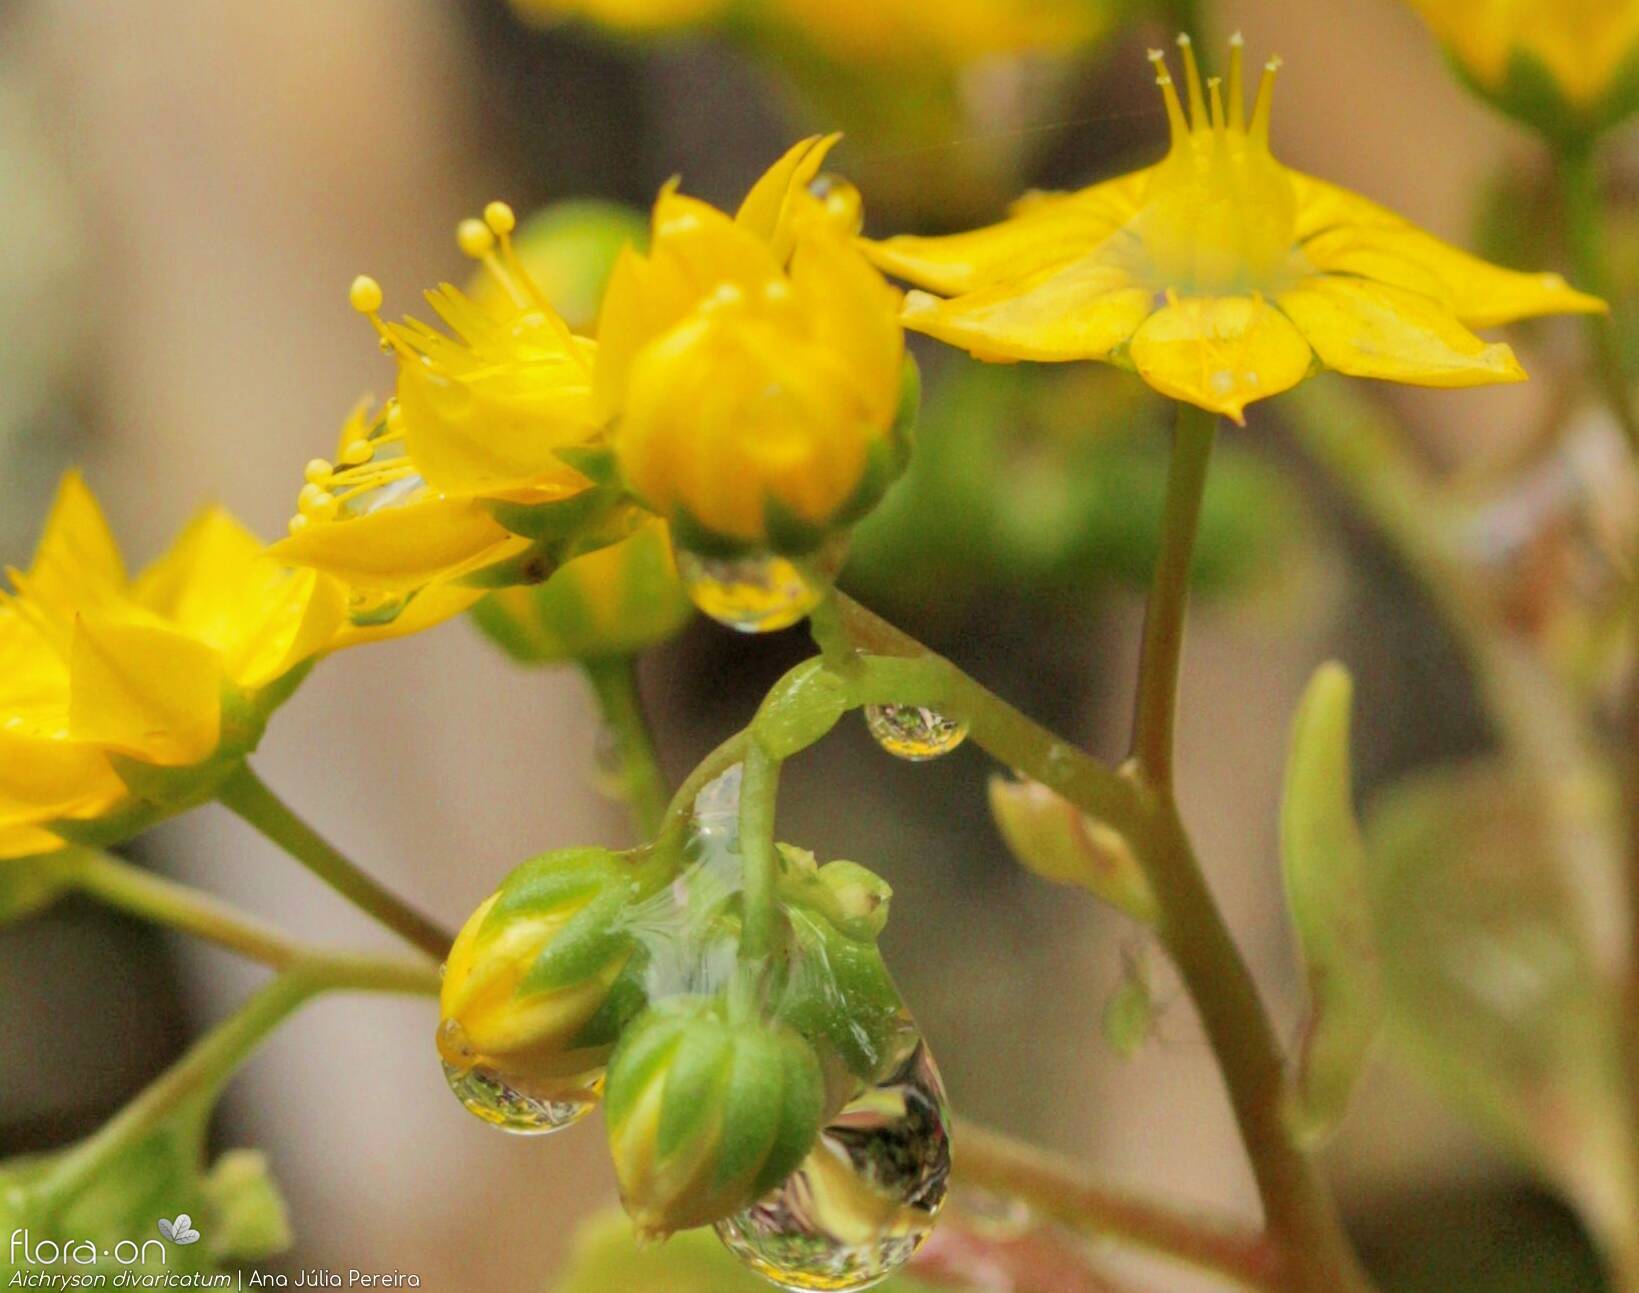 Aichryson divaricatum - Flor (close-up) | Ana Júlia Pereira; CC BY-NC 4.0